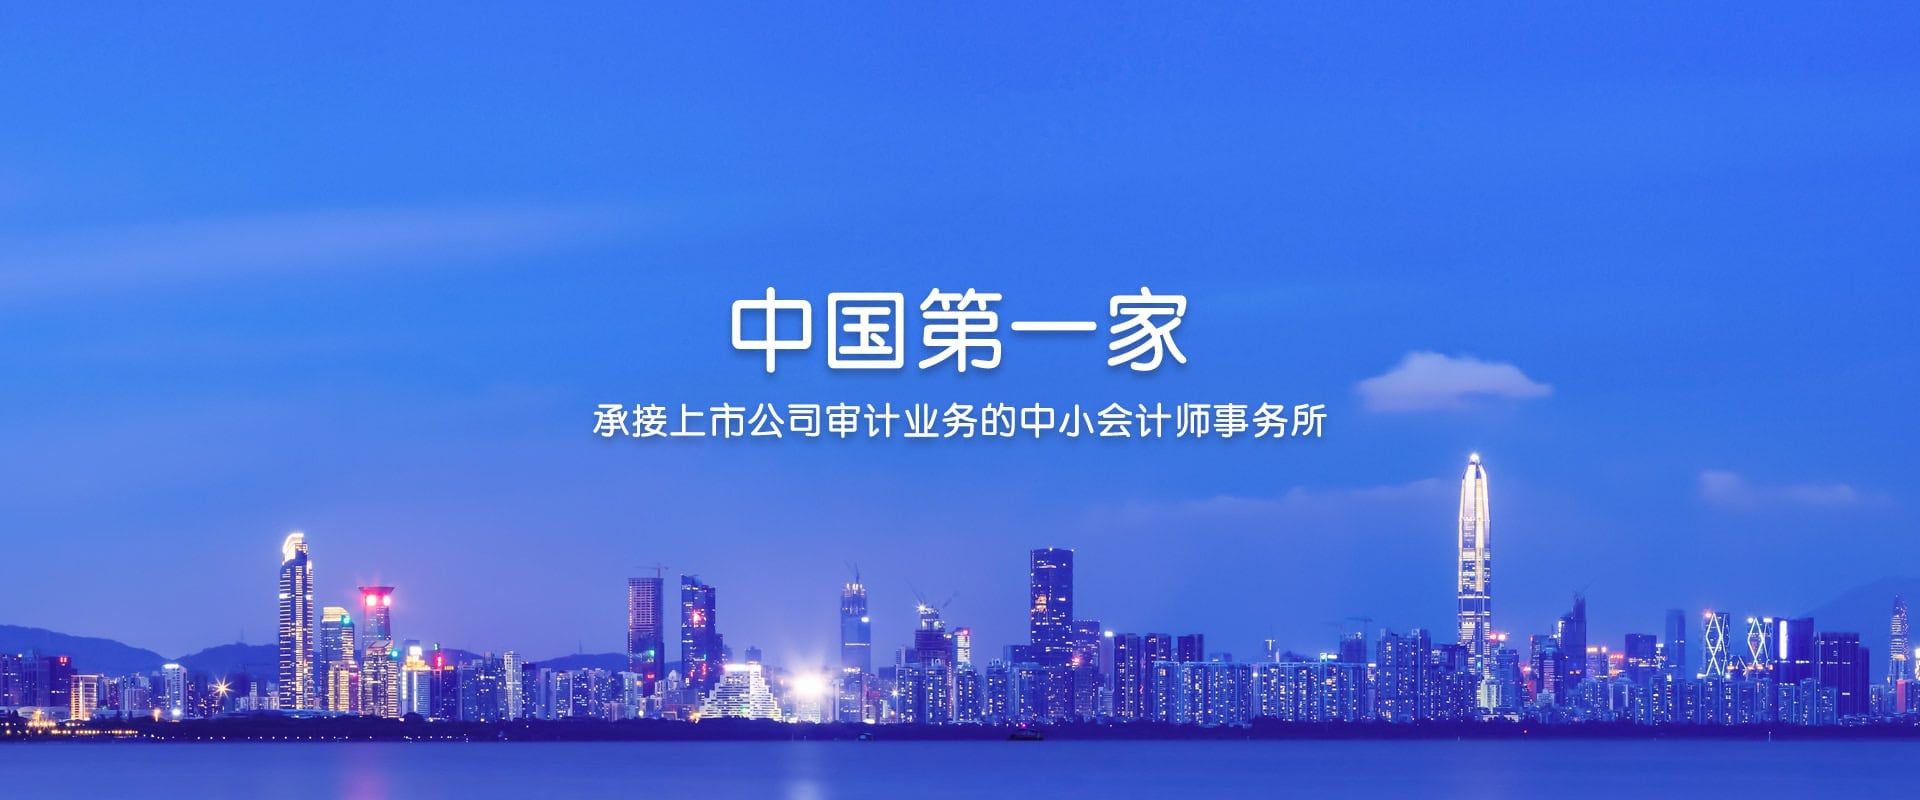 深圳堂堂为A股上市公司新亿出具审计报告